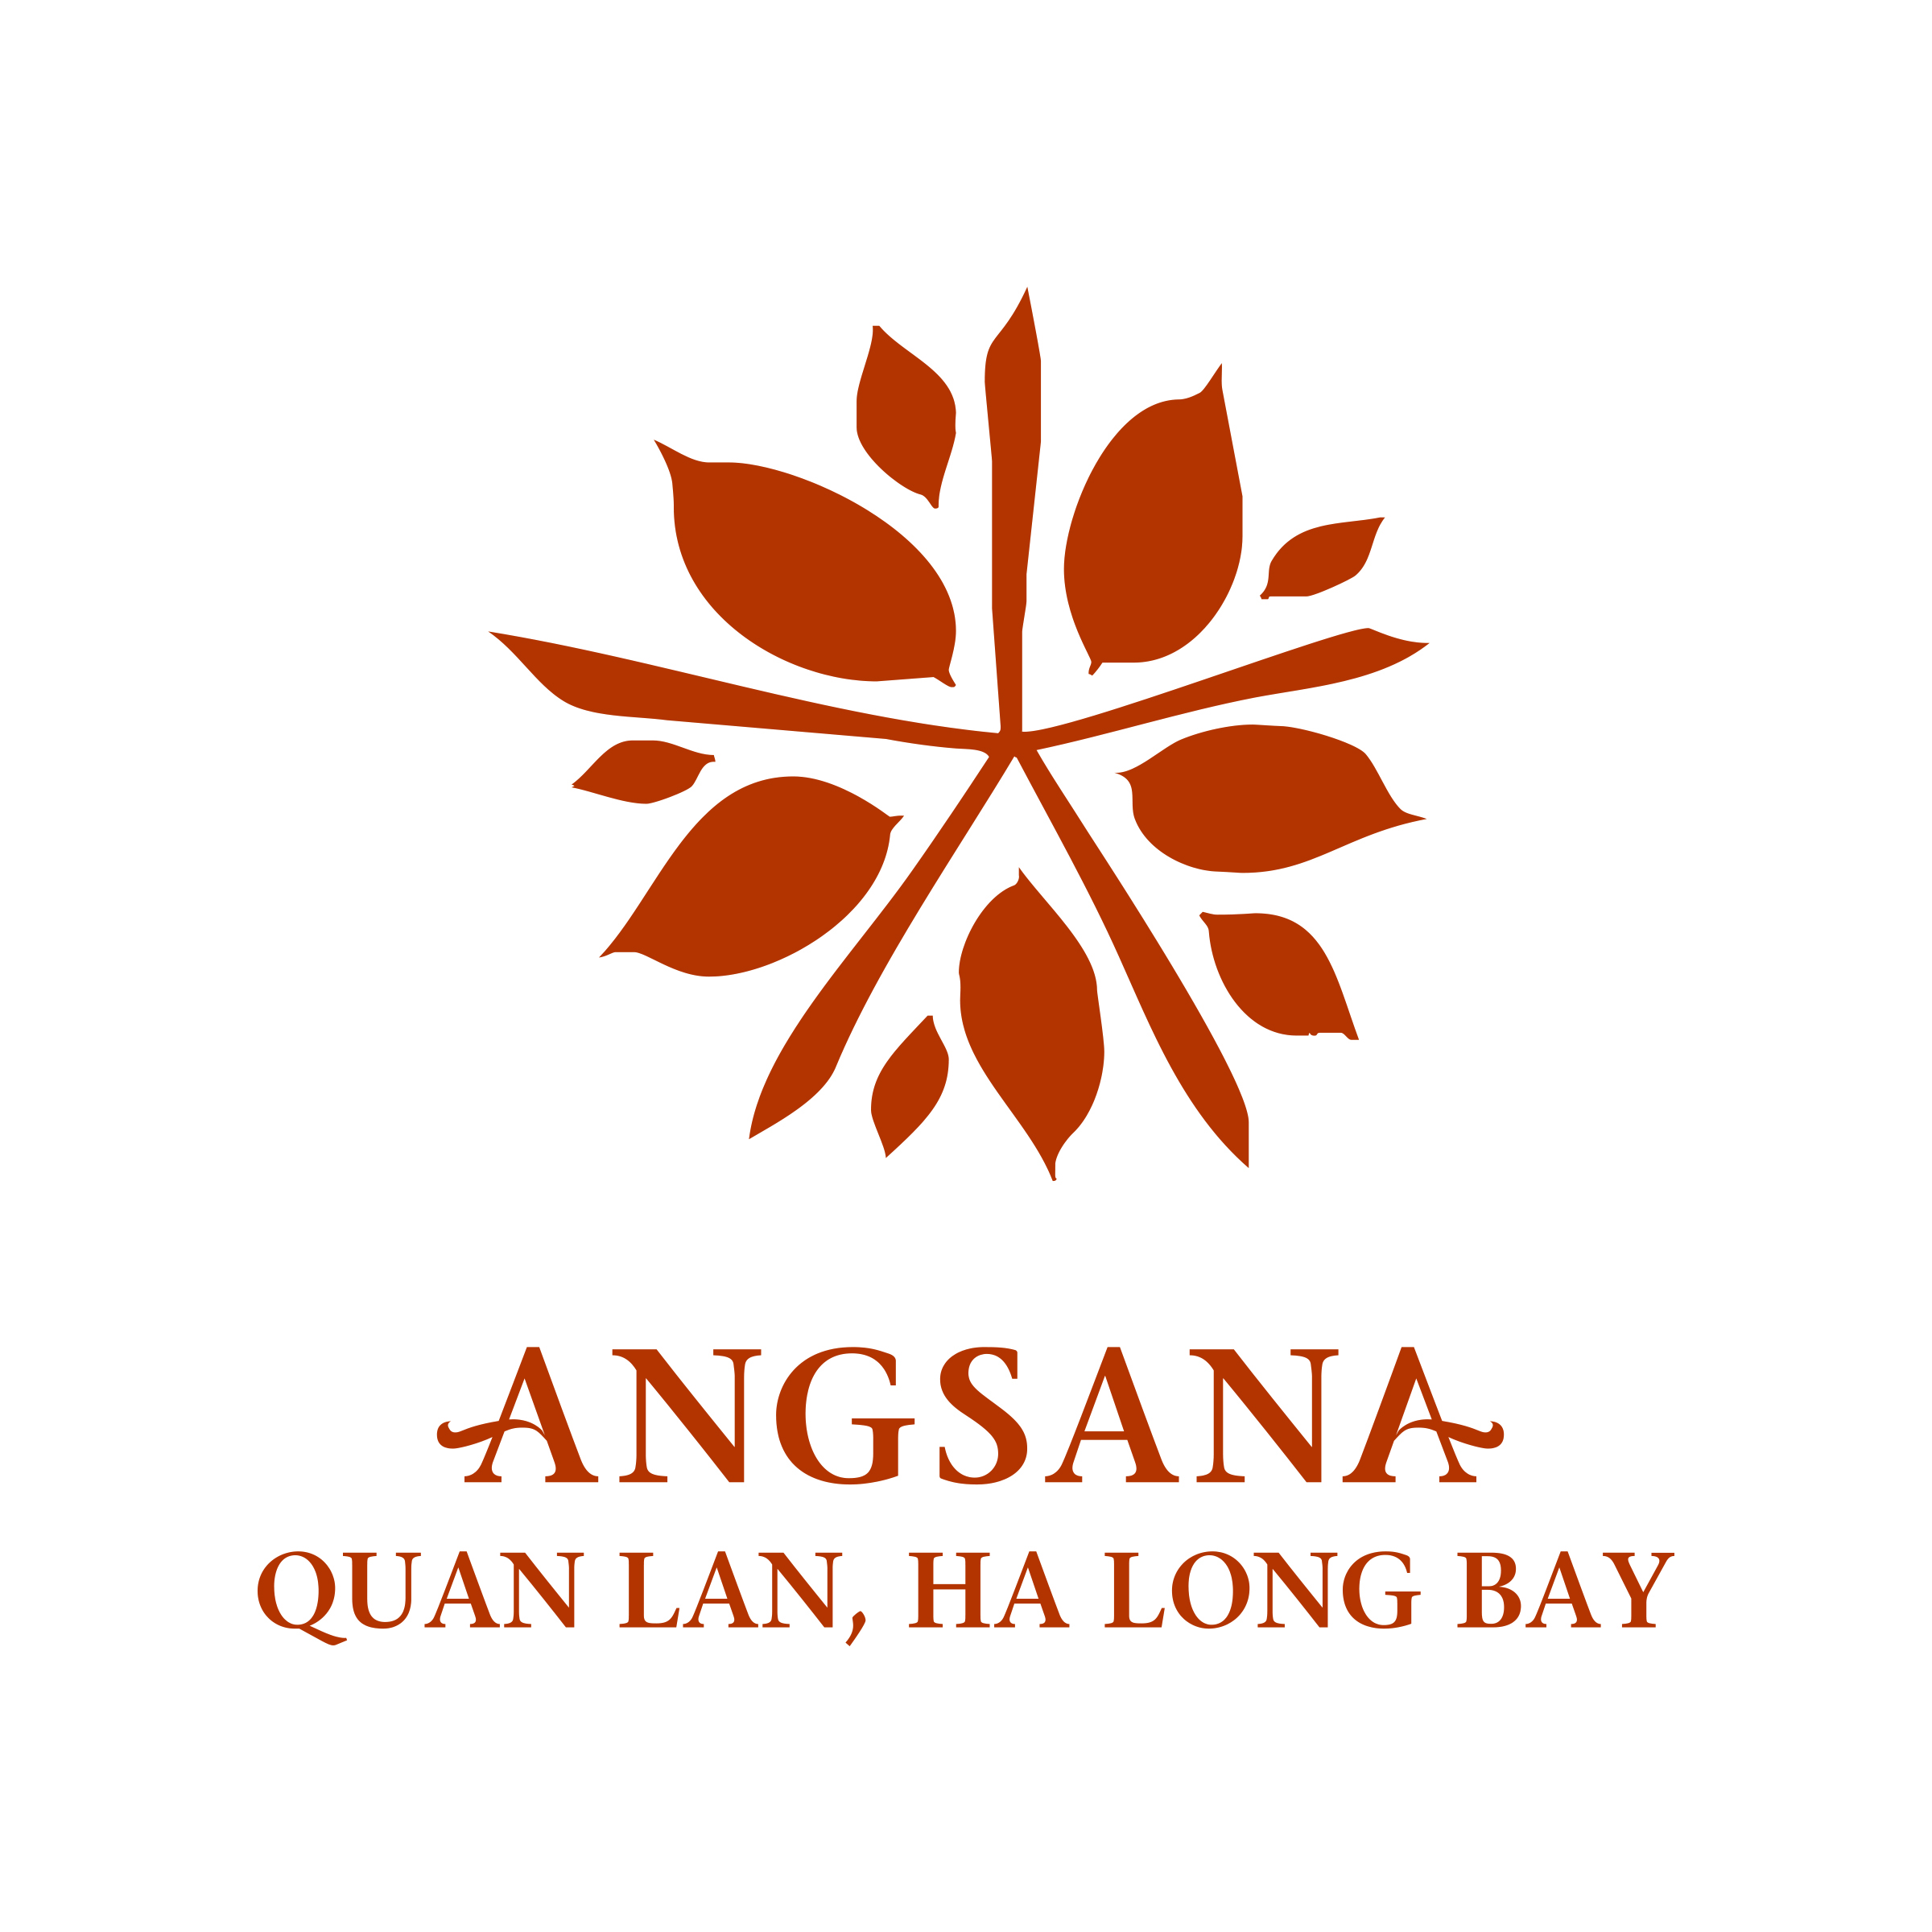 Angsana Quan Lan - Ha Long Bay